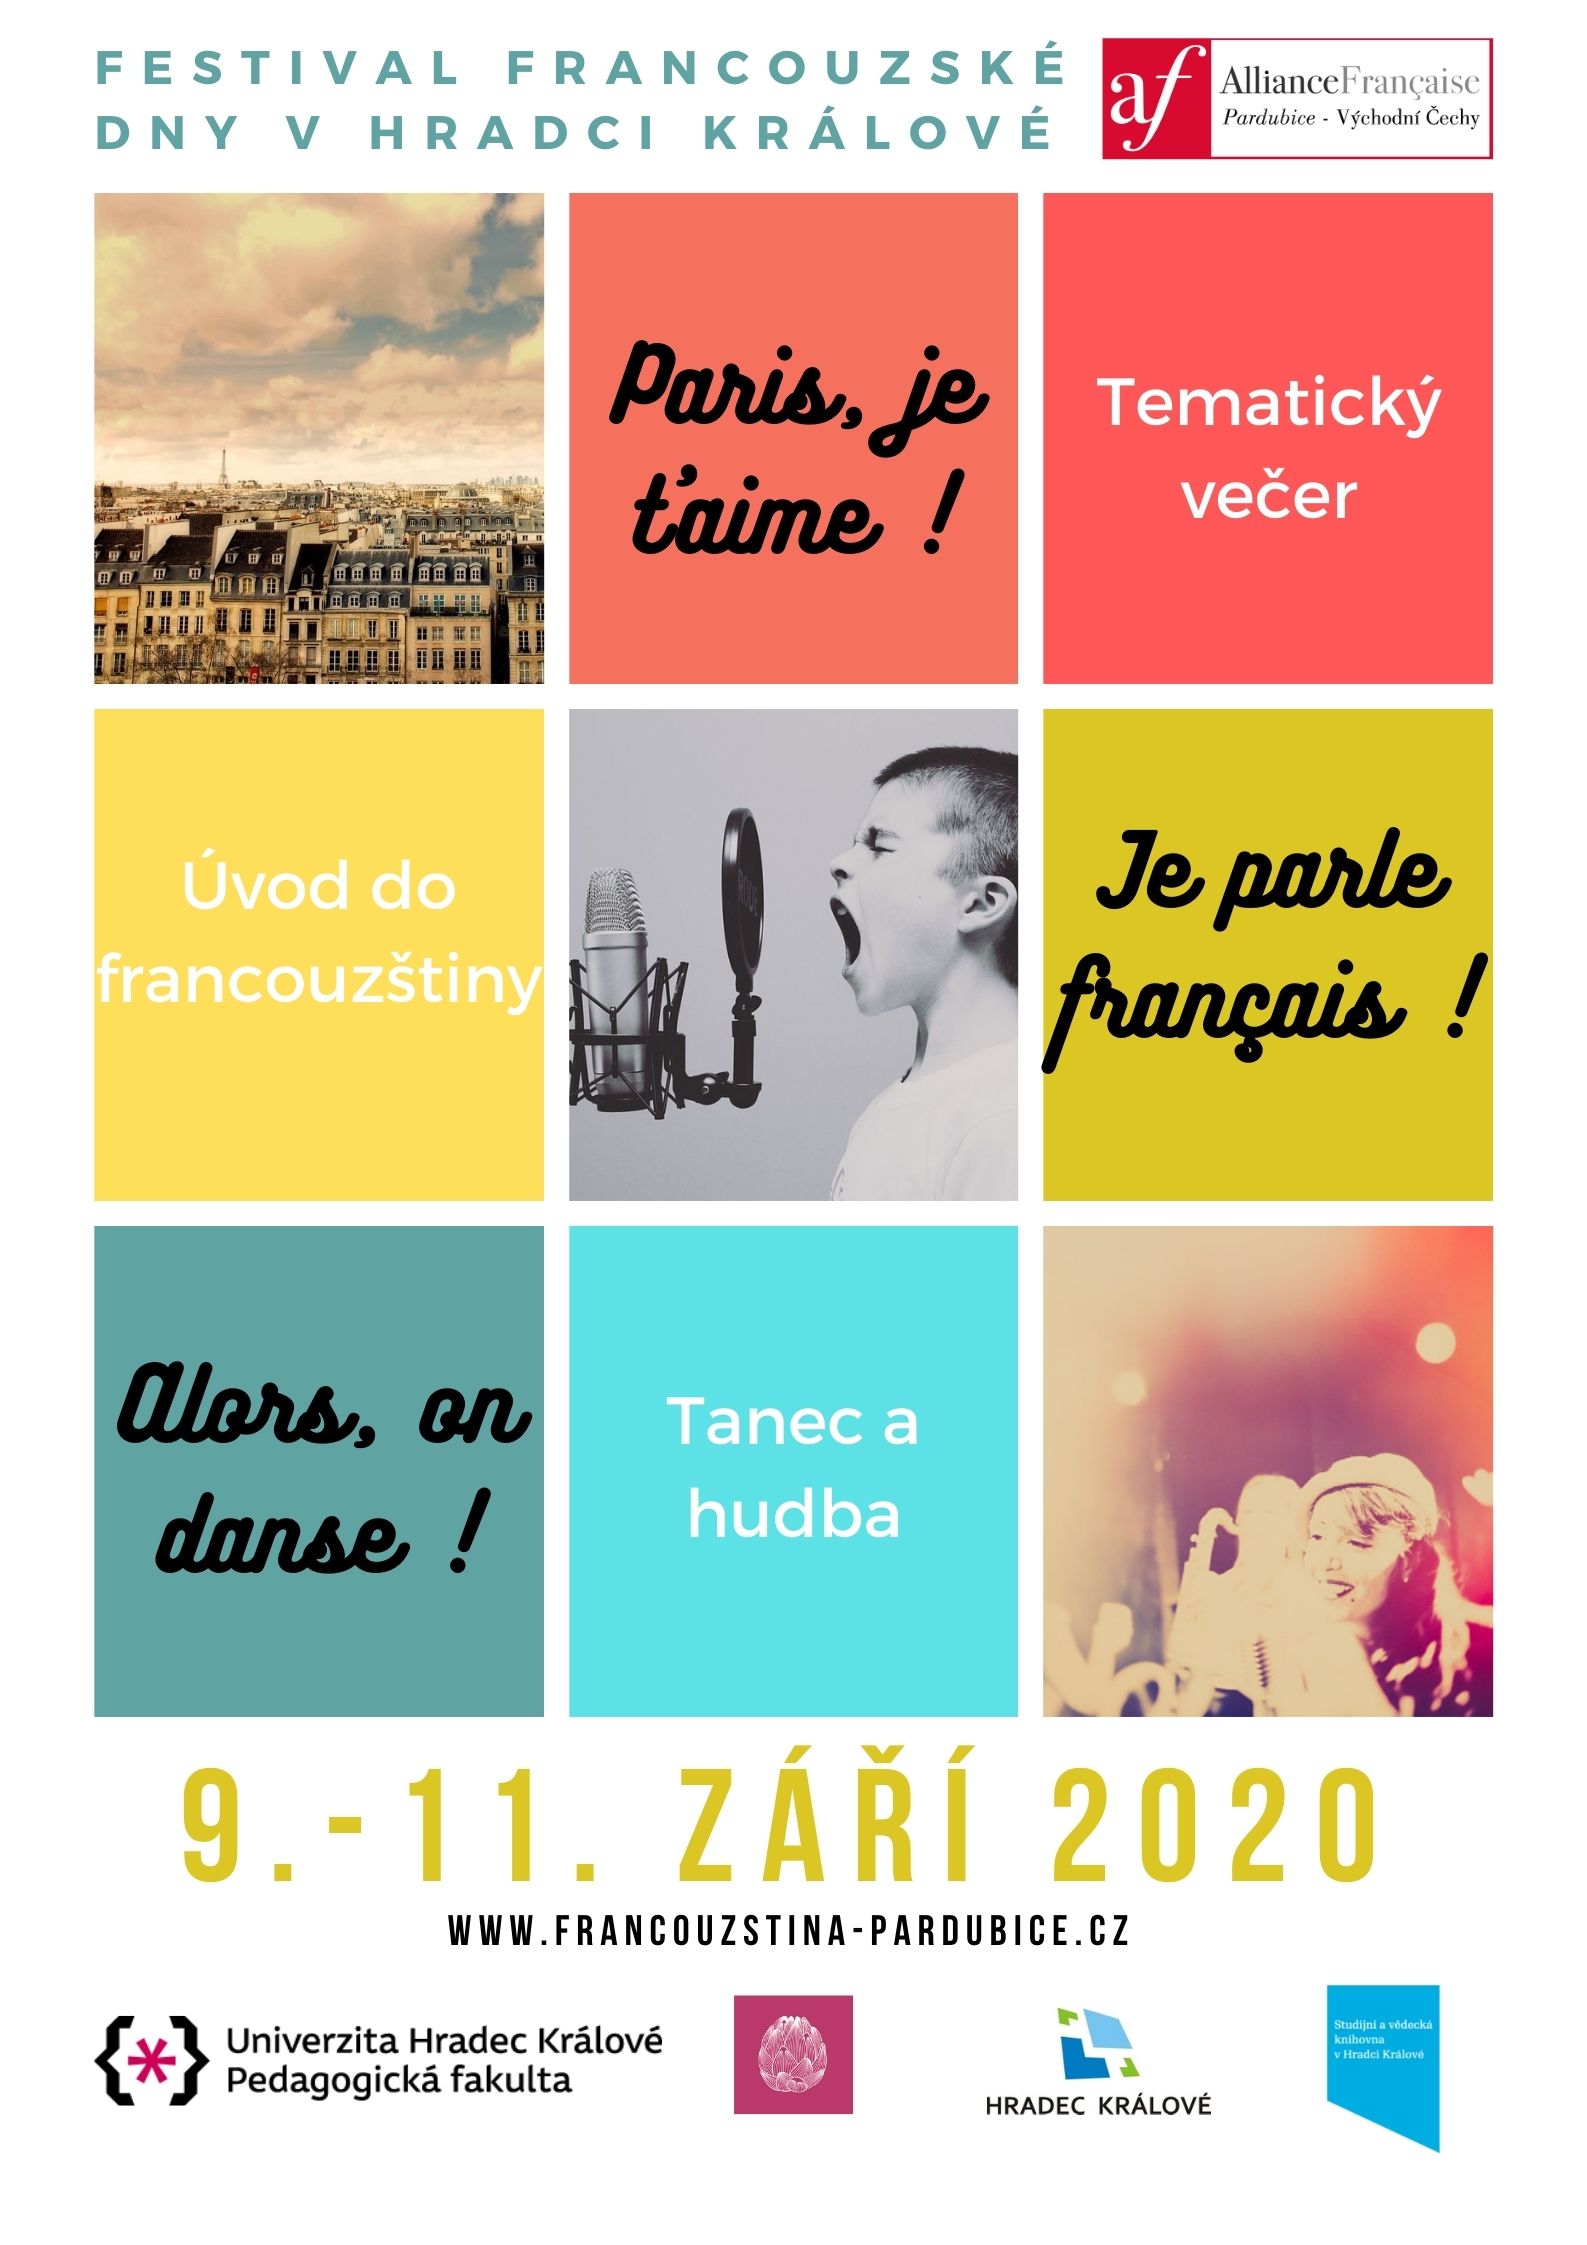 Festival des Journées françaises de l'Alliance à Hradec Kralové